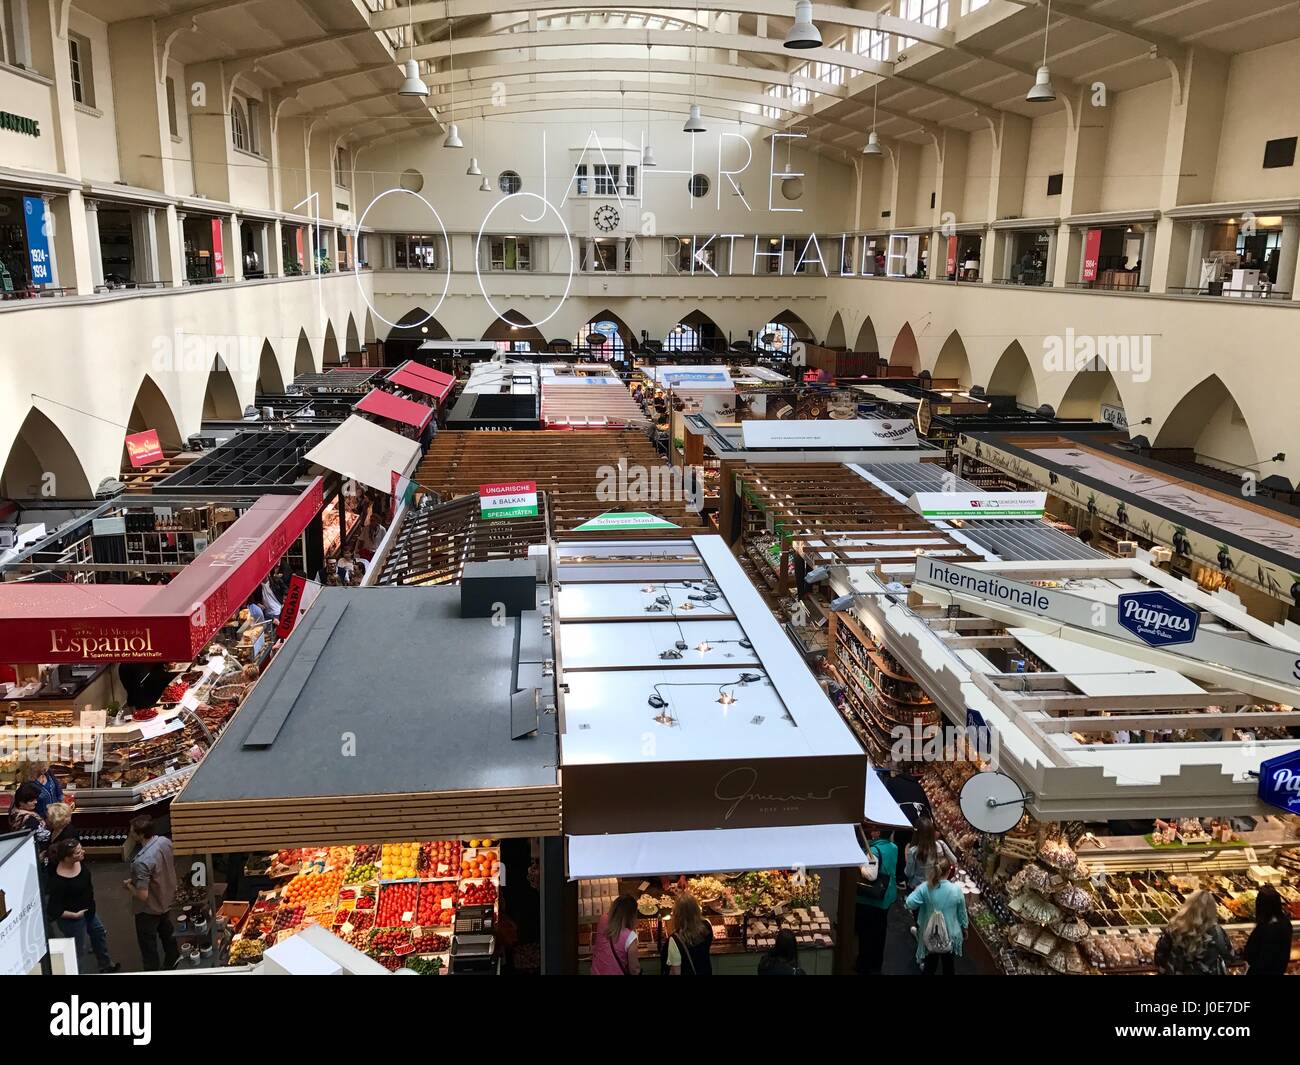 The Market Hall in Stuttgart Stock Photo